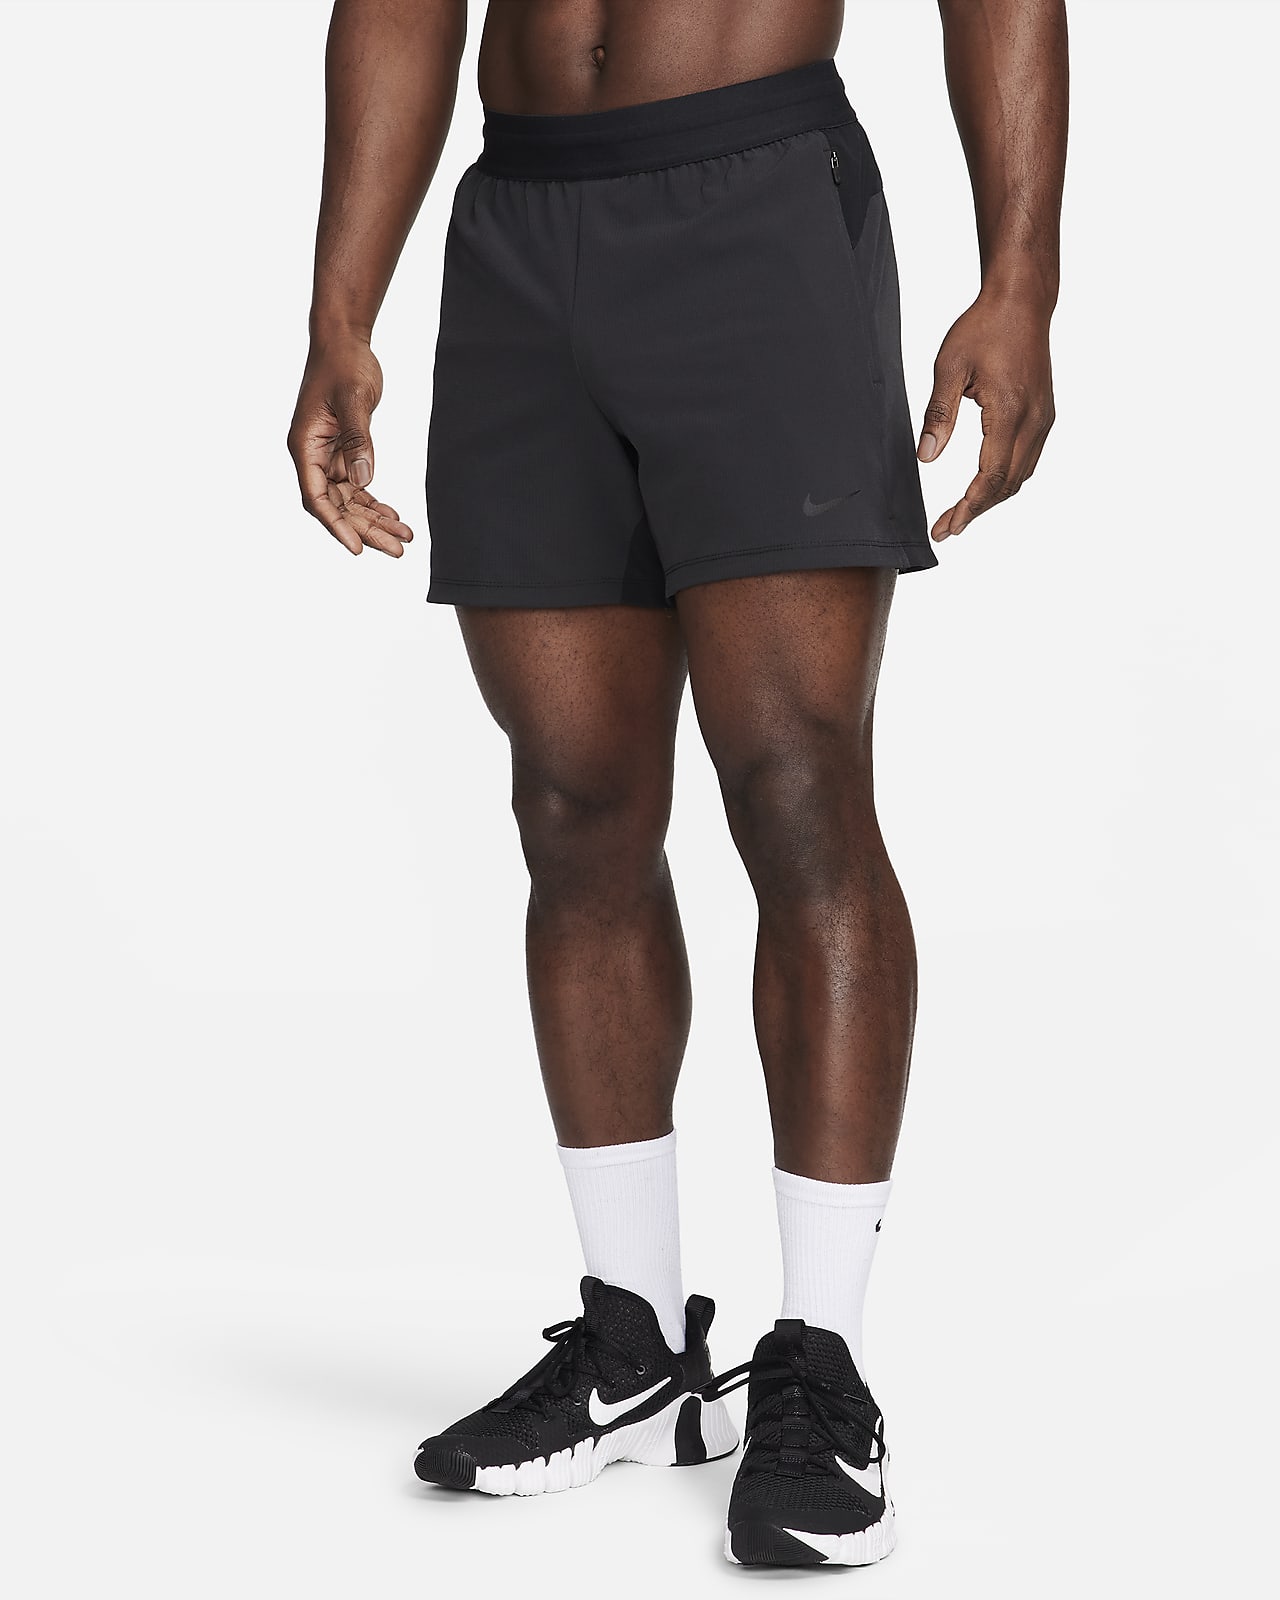 Pánské 13cm fitness kraťasy Nike Flex Rep bez podšívky